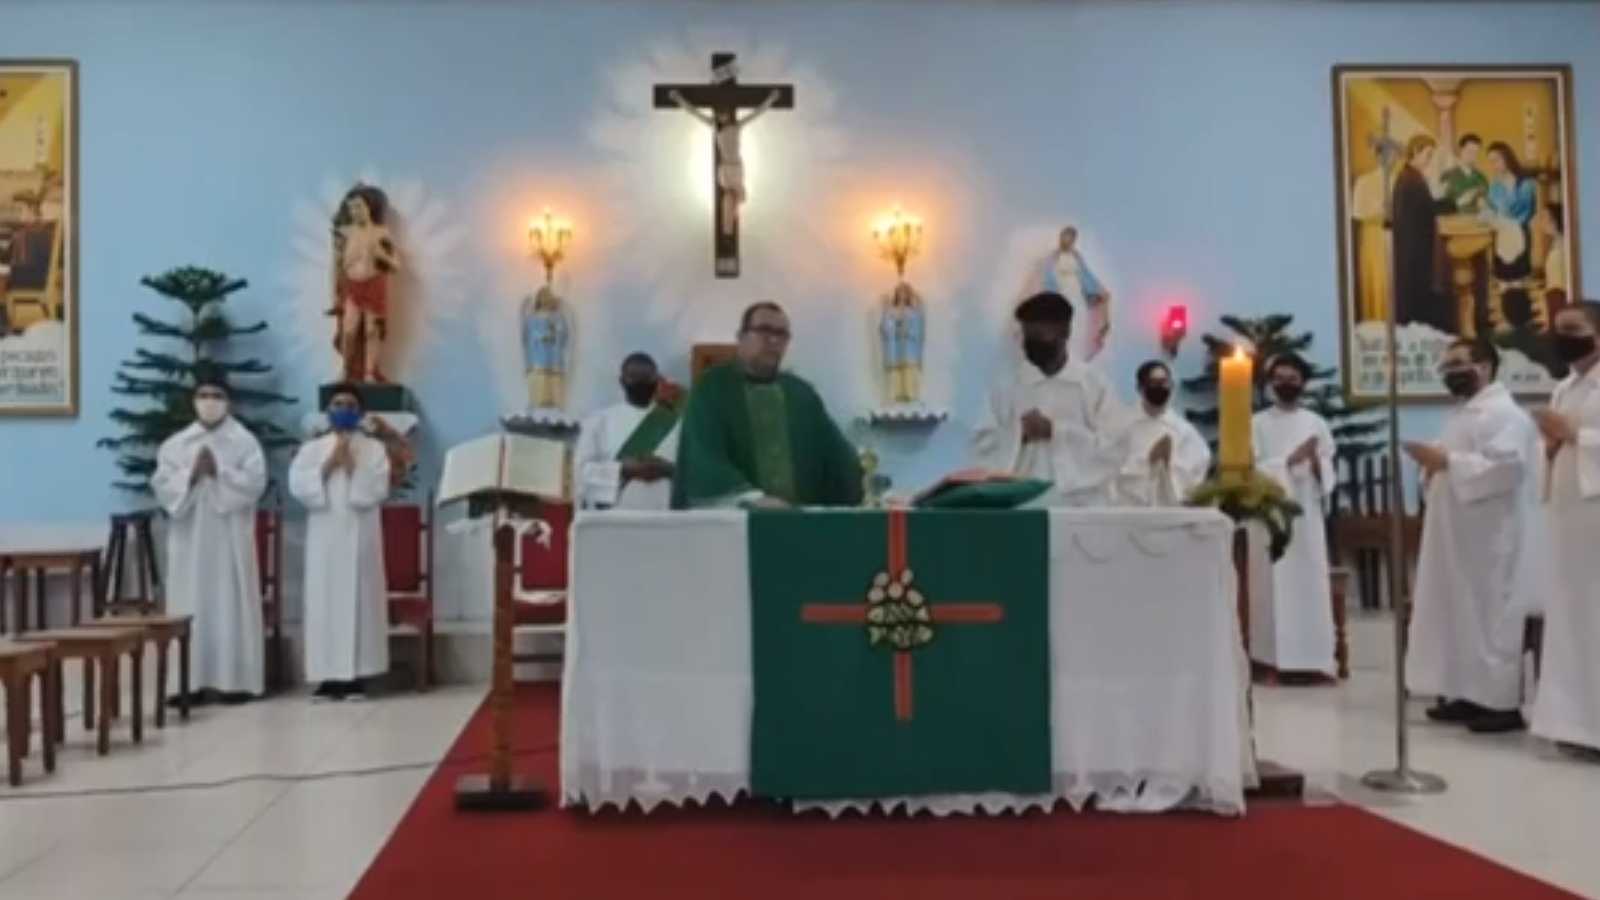 Vídeo: Padre passa mal e desmaia durante transmissão online de missa no Recife